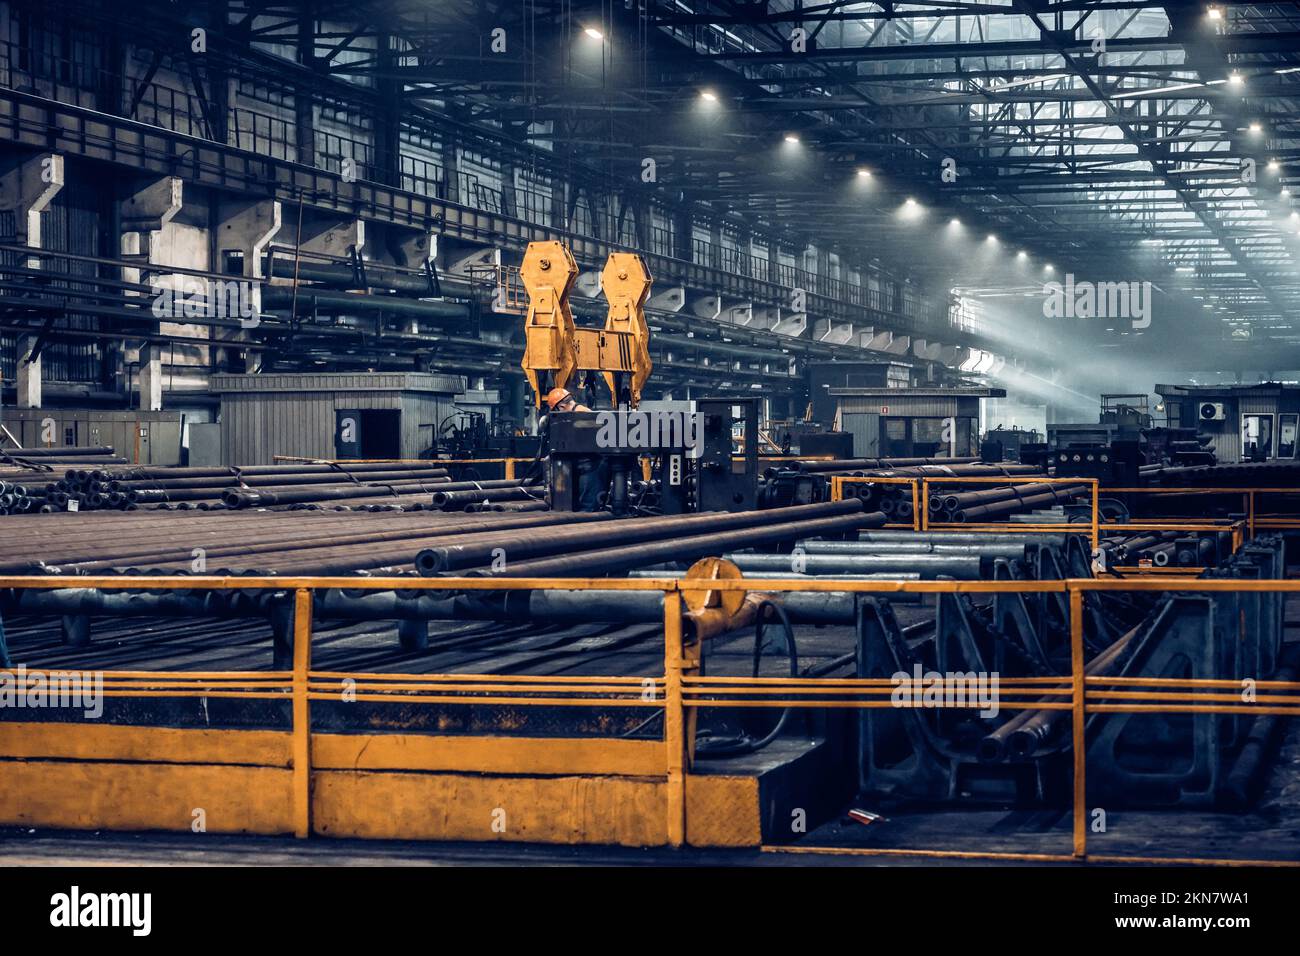 Procédé de fabrication de tuyaux en acier à température élevée du four sidérurgique.Usine de fer et d'acier ou usine de tuyauterie située à Taganrog au sud de la Russie. Banque D'Images